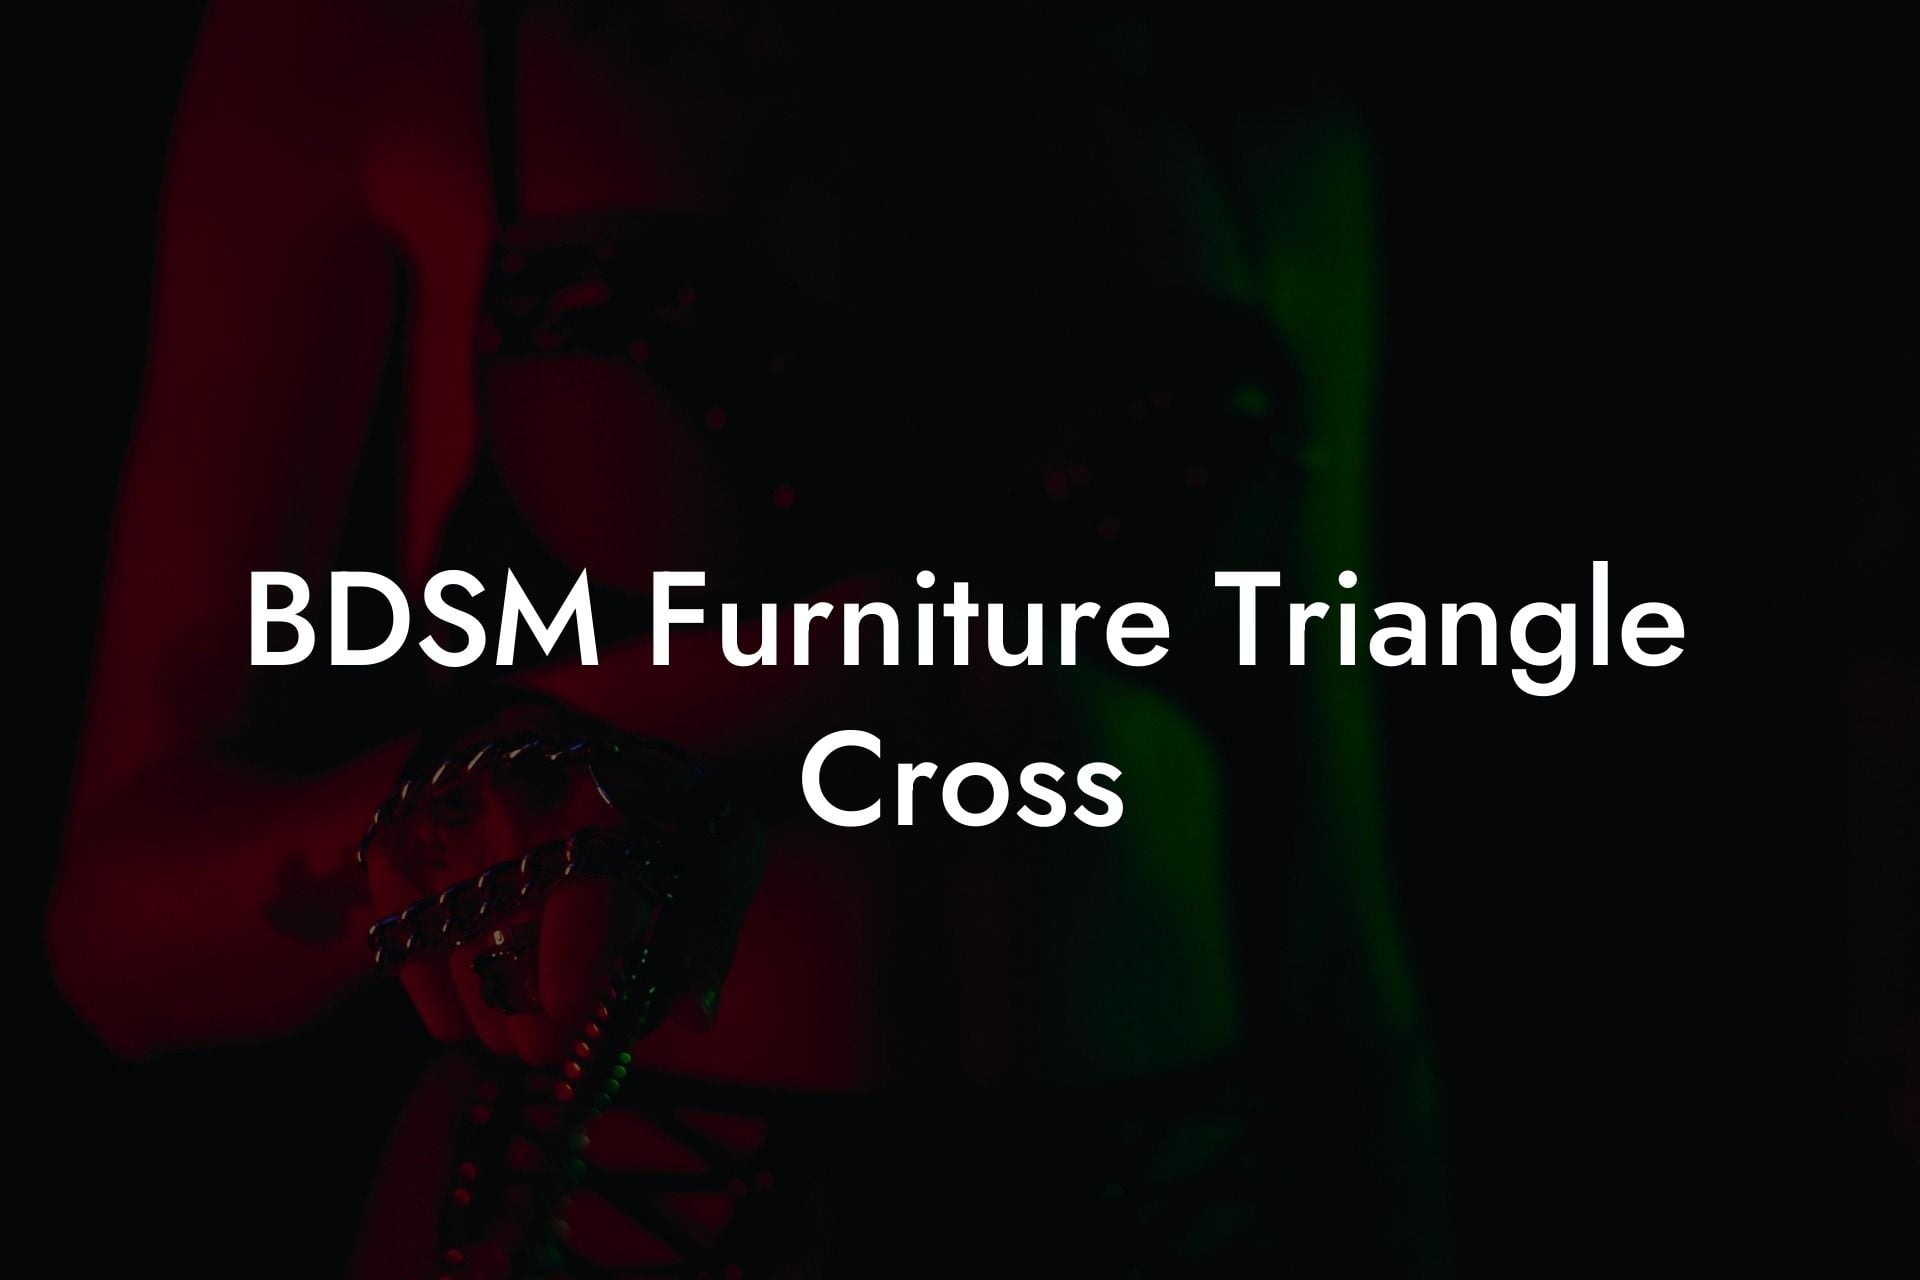 BDSM Furniture Triangle Cross